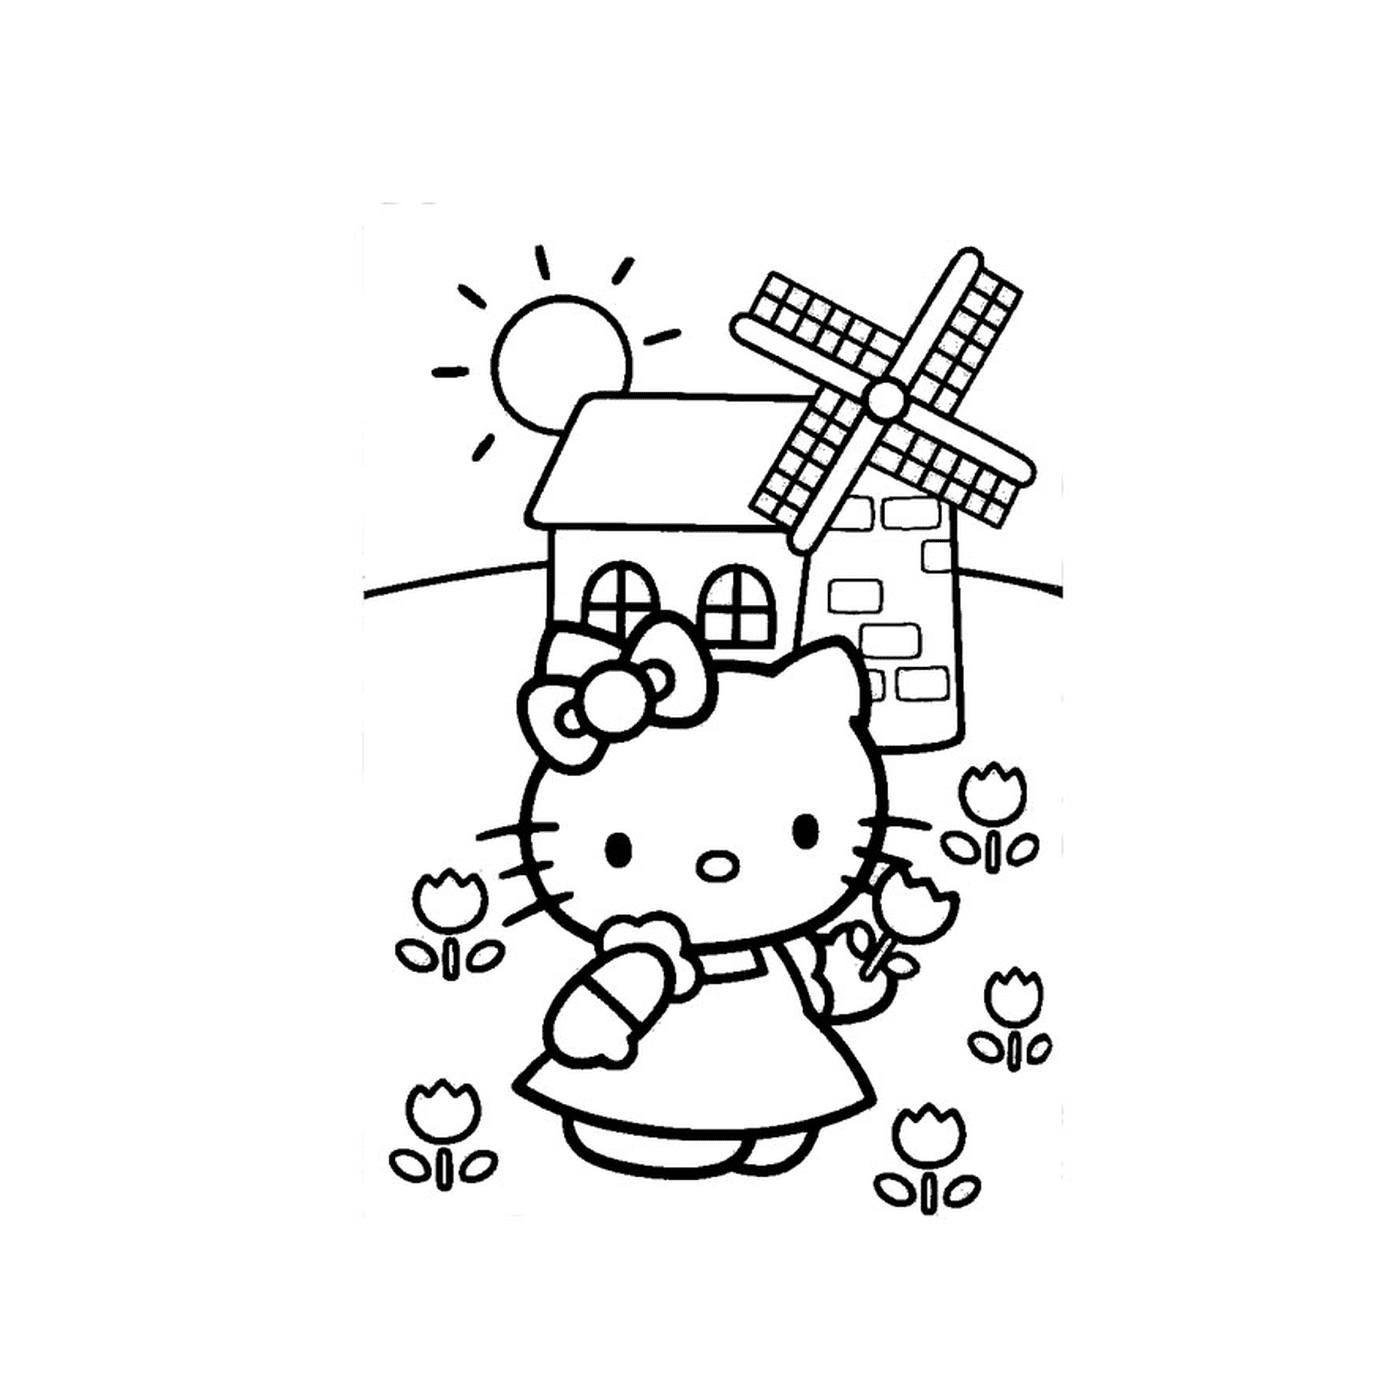   Une hello kitty avec un moulin à vent en arrière-plan 